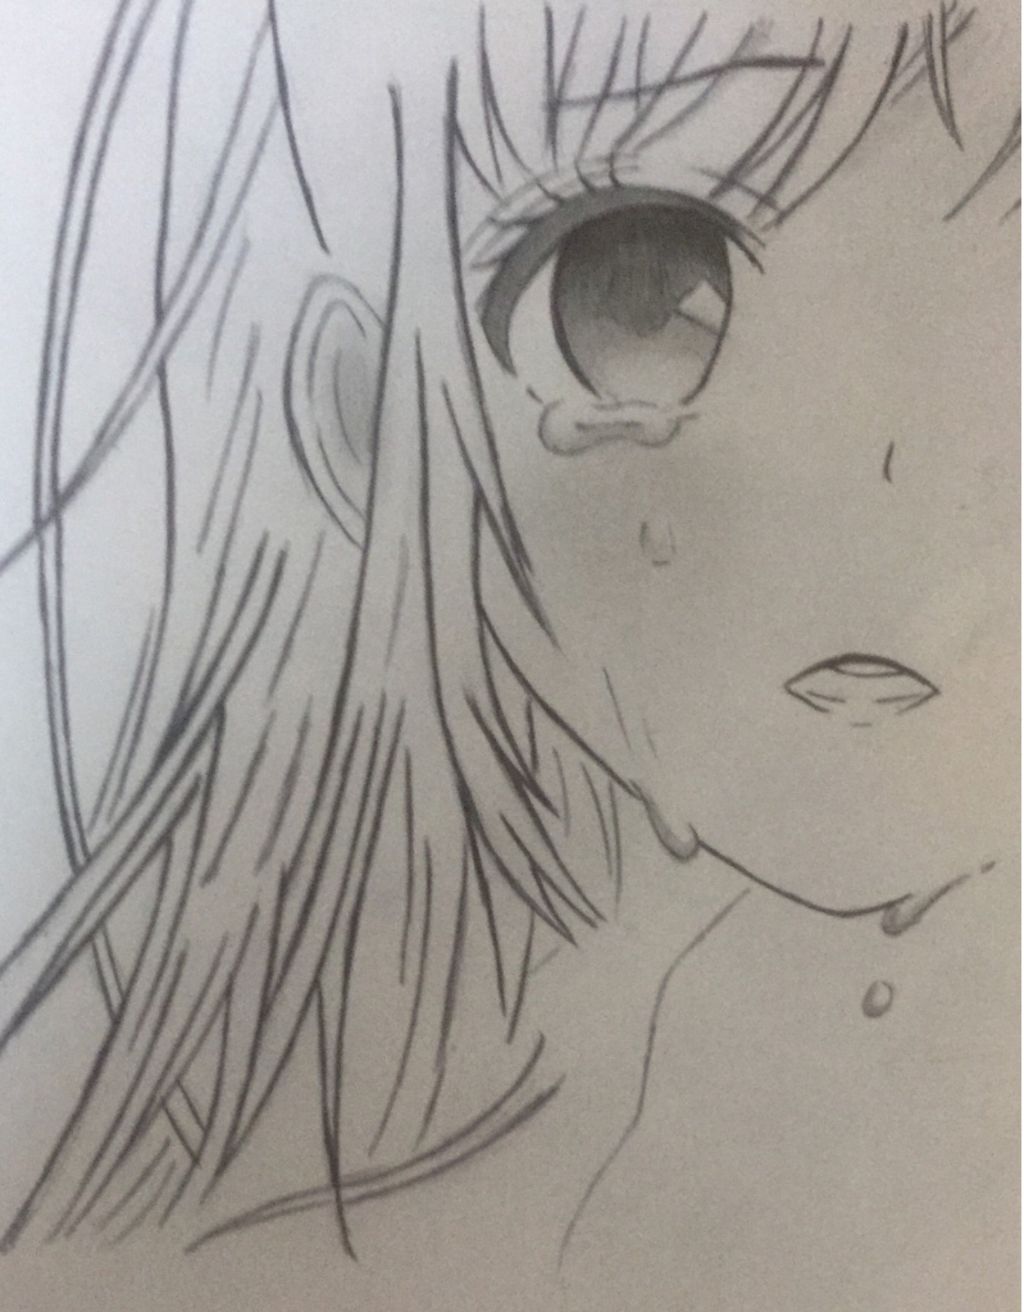 Hãy xem bức tranh anime này về một cô gái buồn! Nét vẽ tinh tế và chân thật tạo nên cảm giác đầy cảm động. Điều này sẽ đưa bạn vào cảm xúc của nhân vật, khiến bạn cảm thấy những điều mà cô ấy đang trải qua. Sự kết hợp giữa hình ảnh và chất lượng của tác phẩm chắc chắn sẽ khiến bạn muốn xem nó một lần nữa. Bạn có biết rằng đôi mắt là cửa sổ của tâm hồn? Bức tranh anime này thể hiện rõ điều đó. Hãy nhìn vào đôi mắt của cô gái buồn trong tranh và cảm nhận nỗi đau của cô ấy. Trong những nét vẽ, bạn có thể nhìn thấy một tâm hồn đầy sâu sắc để khám phá. Hãy dành chút thời gian để ngồi lại, nhìn vào bức tranh này và tìm ra những thông điệp ẩn giấu bên trong. Nếu bạn yêu thích tranh anime, đây là một tác phẩm mà bạn không nên bỏ qua! Bức tranh này thể hiện tuyệt vời nét đẹp của nhân vật nữ, dù trong trạng thái buồn bã hay lo lắng. Nếu bạn cũng cảm thấy mình đang trải qua thời khắc tương tự, hãy xem bức tranh này và cảm nhận sự khác biệt. Nó sẽ cho bạn niềm tin để vượt qua khó khăn và mạnh mẽ hơn đối mặt với thử thách.